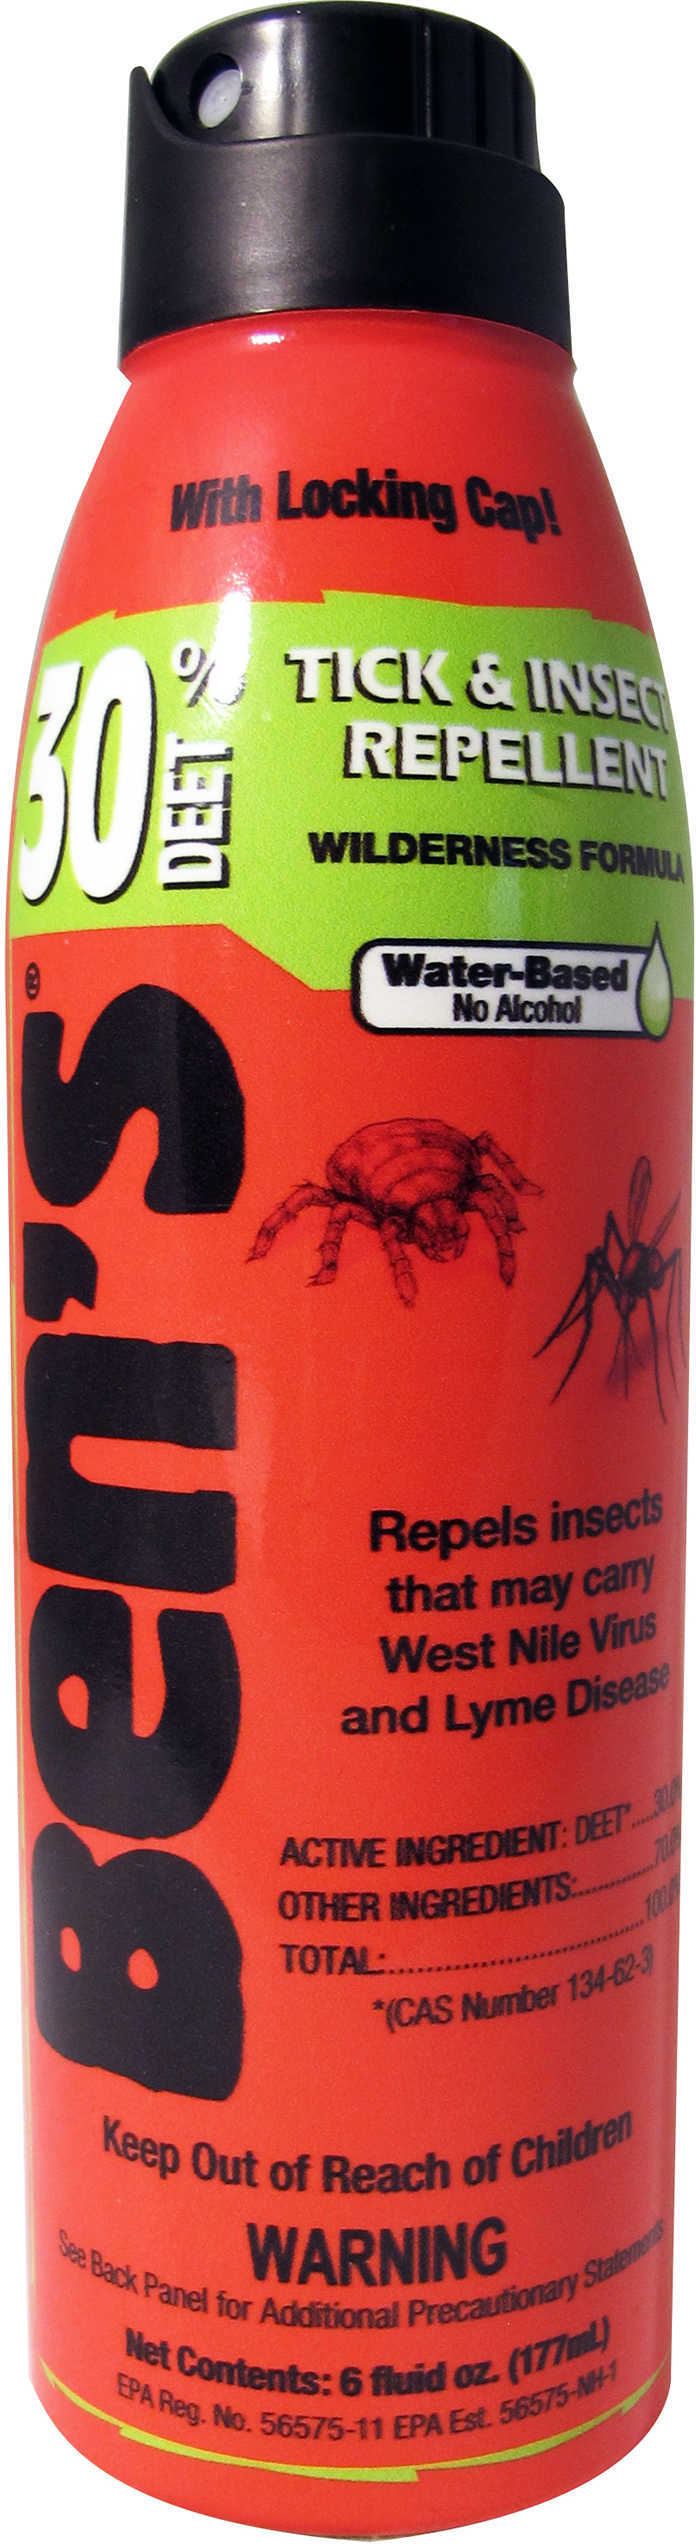 Bens / Tender Corp AMK 30 INSECT Repellent 30% DEET 6Oz Eco Spray